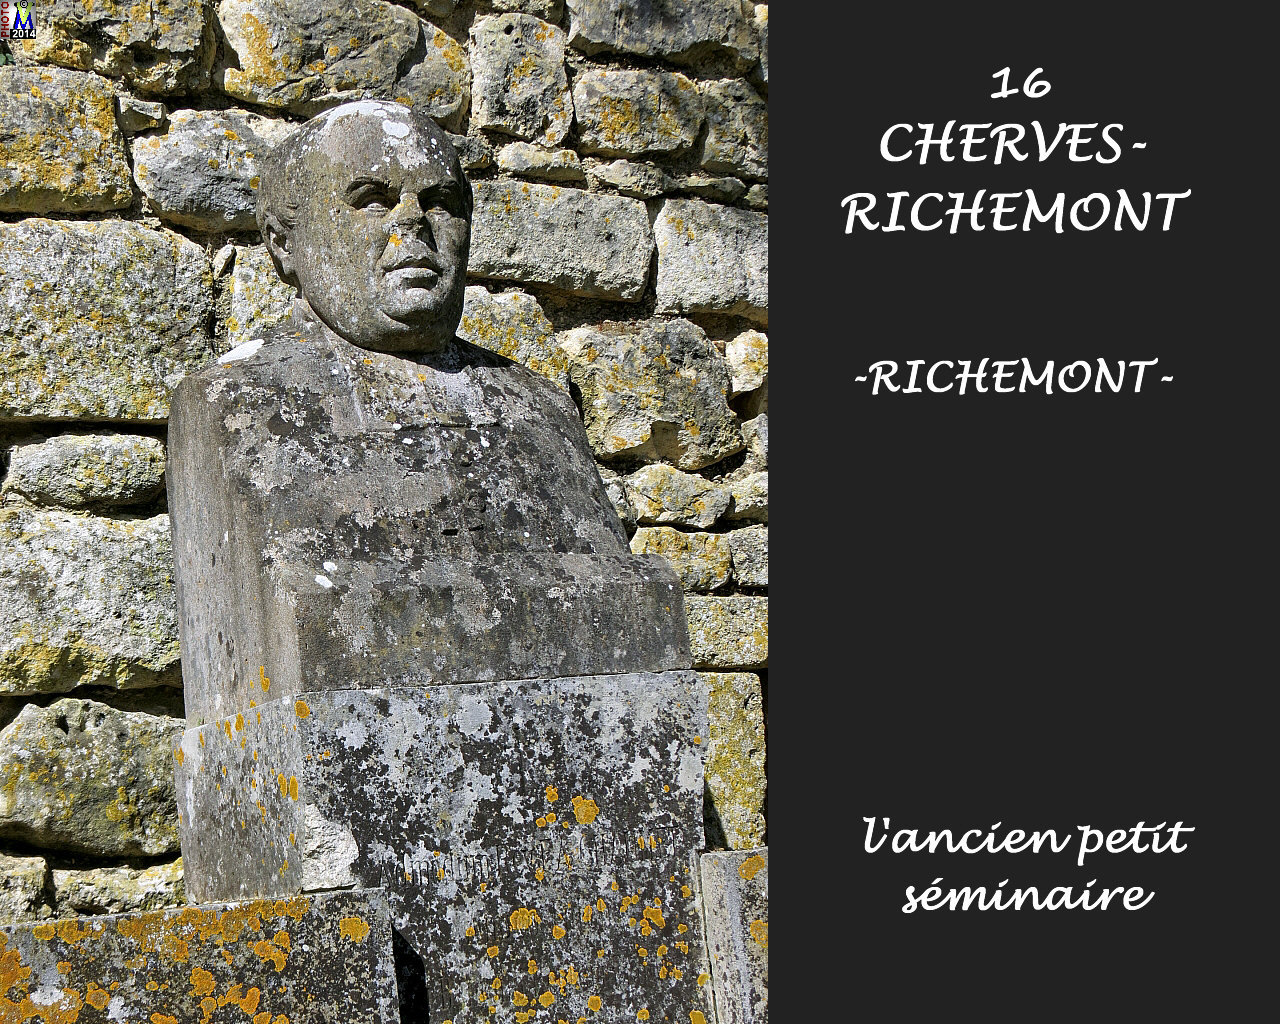 16CHERVES-RICHEMONTzRICHEMONT-seminaire_110.jpg